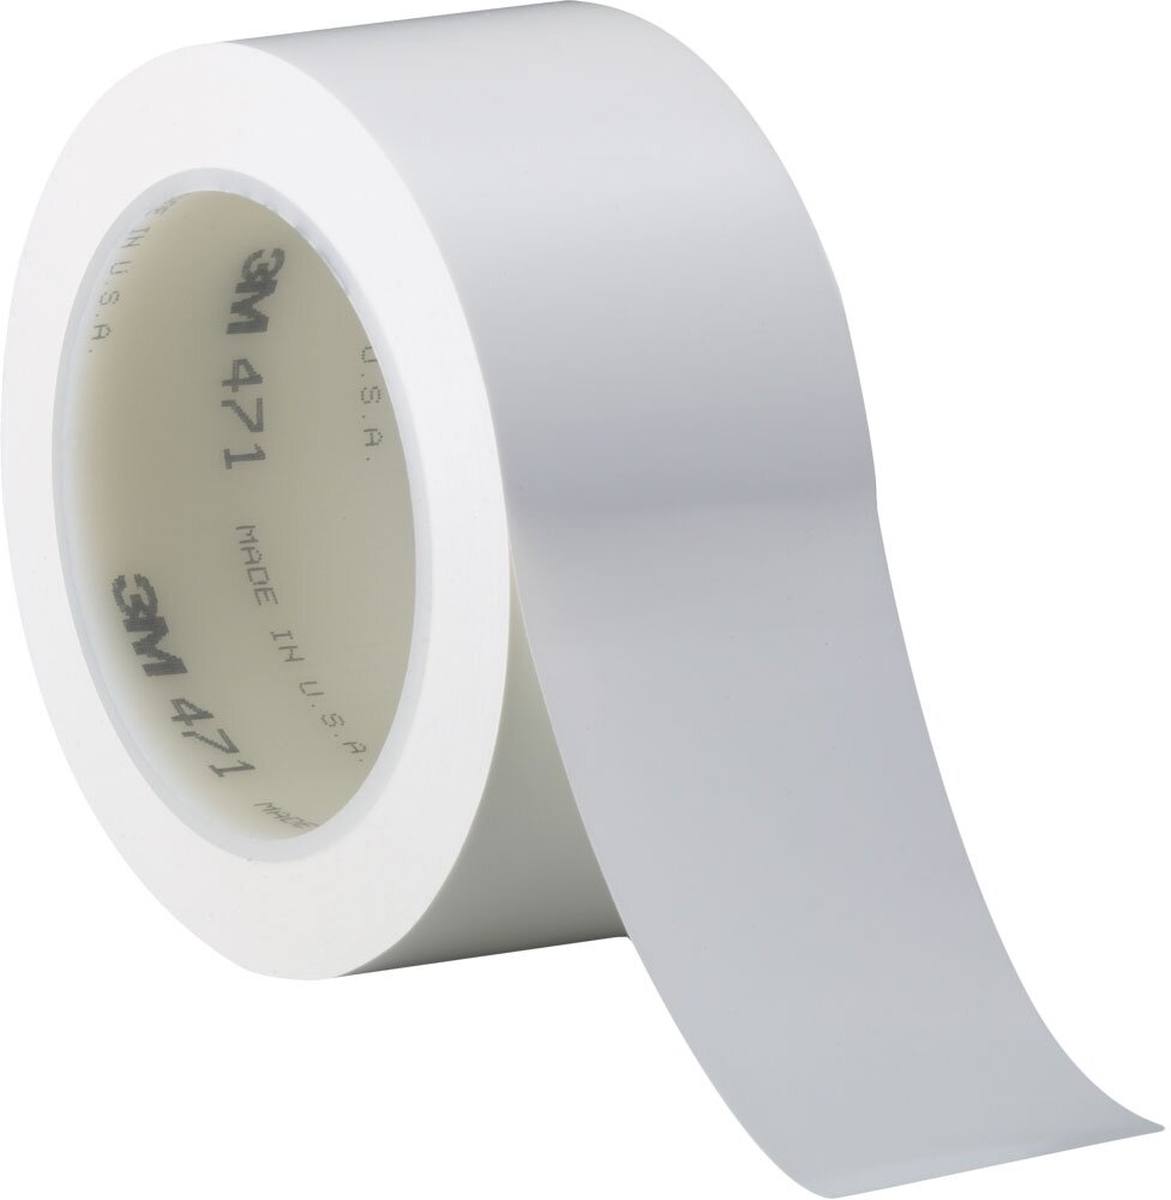 Nastro adesivo 3M in PVC morbido 471 F, bianco, 15 mm x 33 m, 0,13 mm